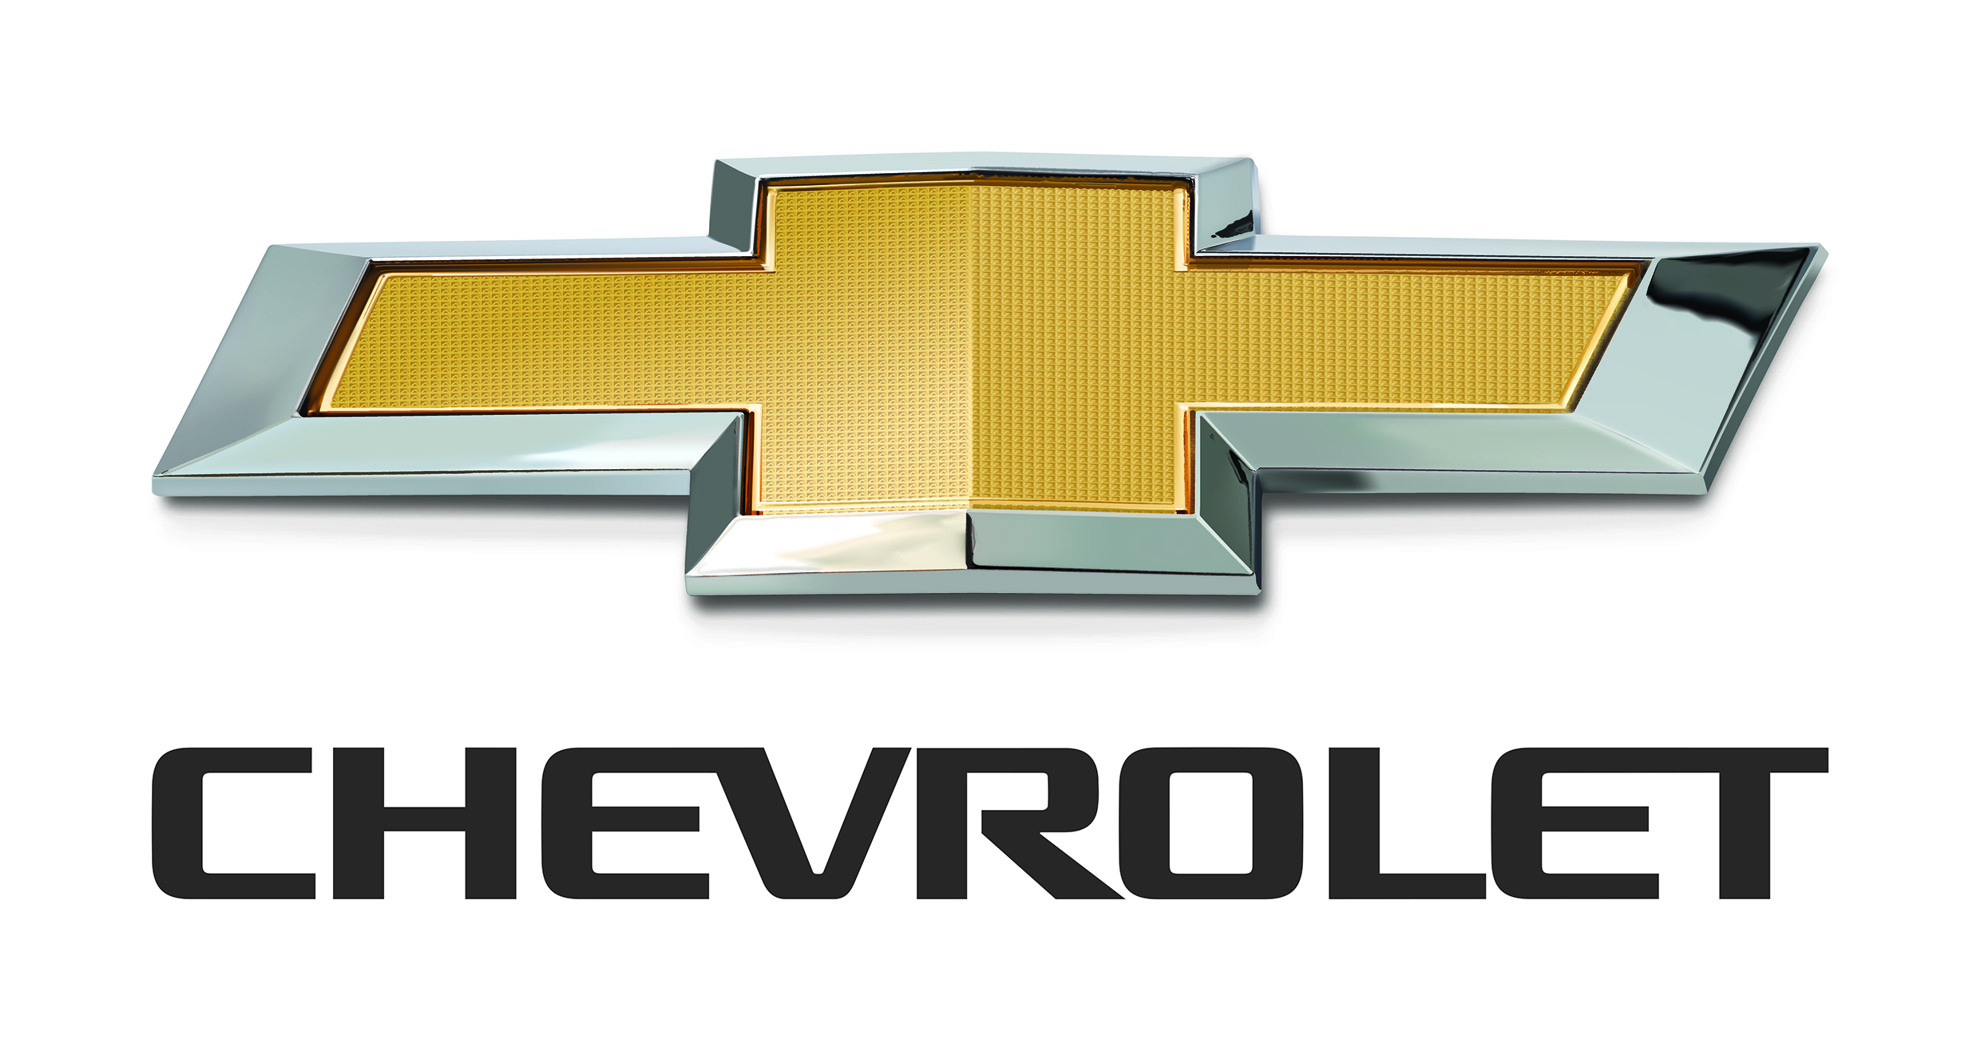 Chevy Symbol Chevrolet Logo - Likegrass.com